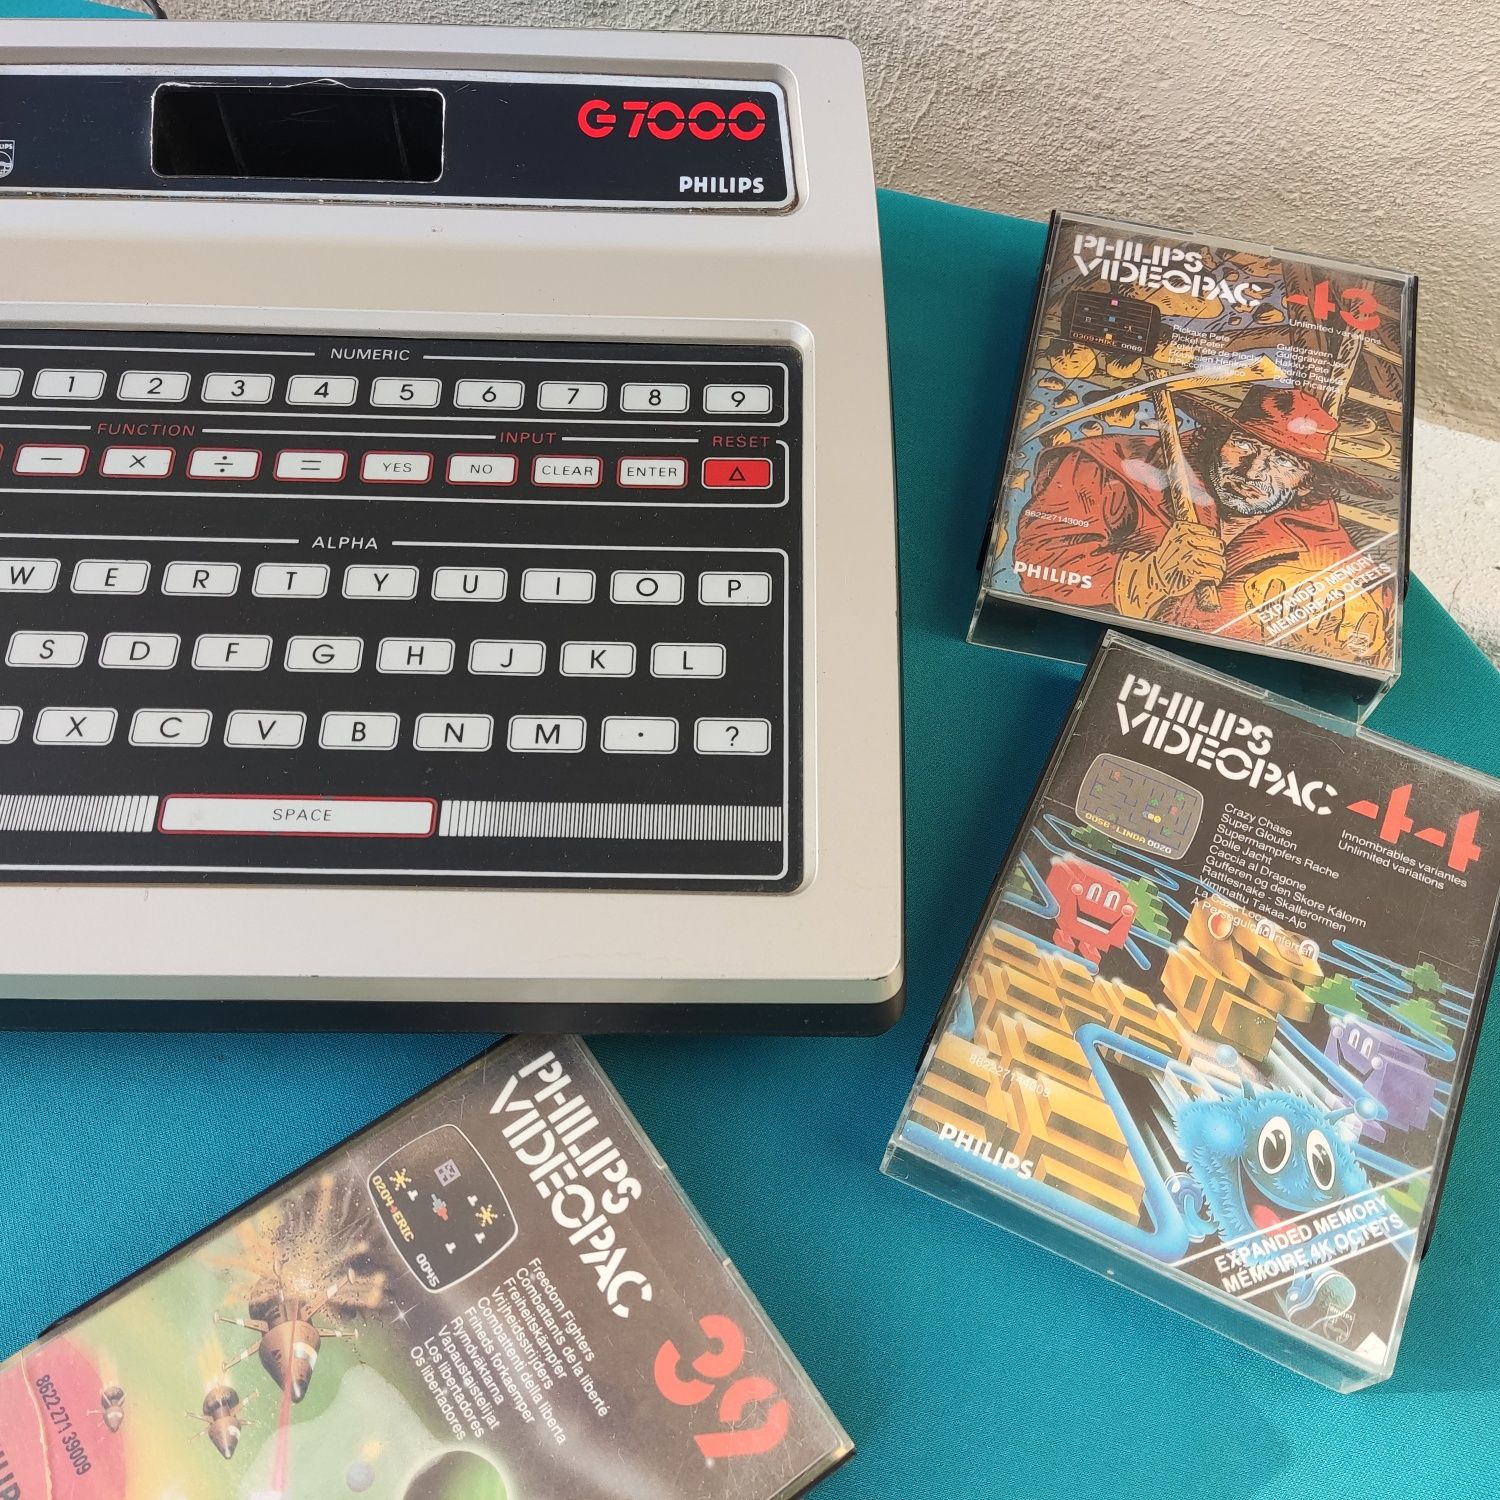 Philips Videopac g7000 (coleção, vintage) + 3 jogos